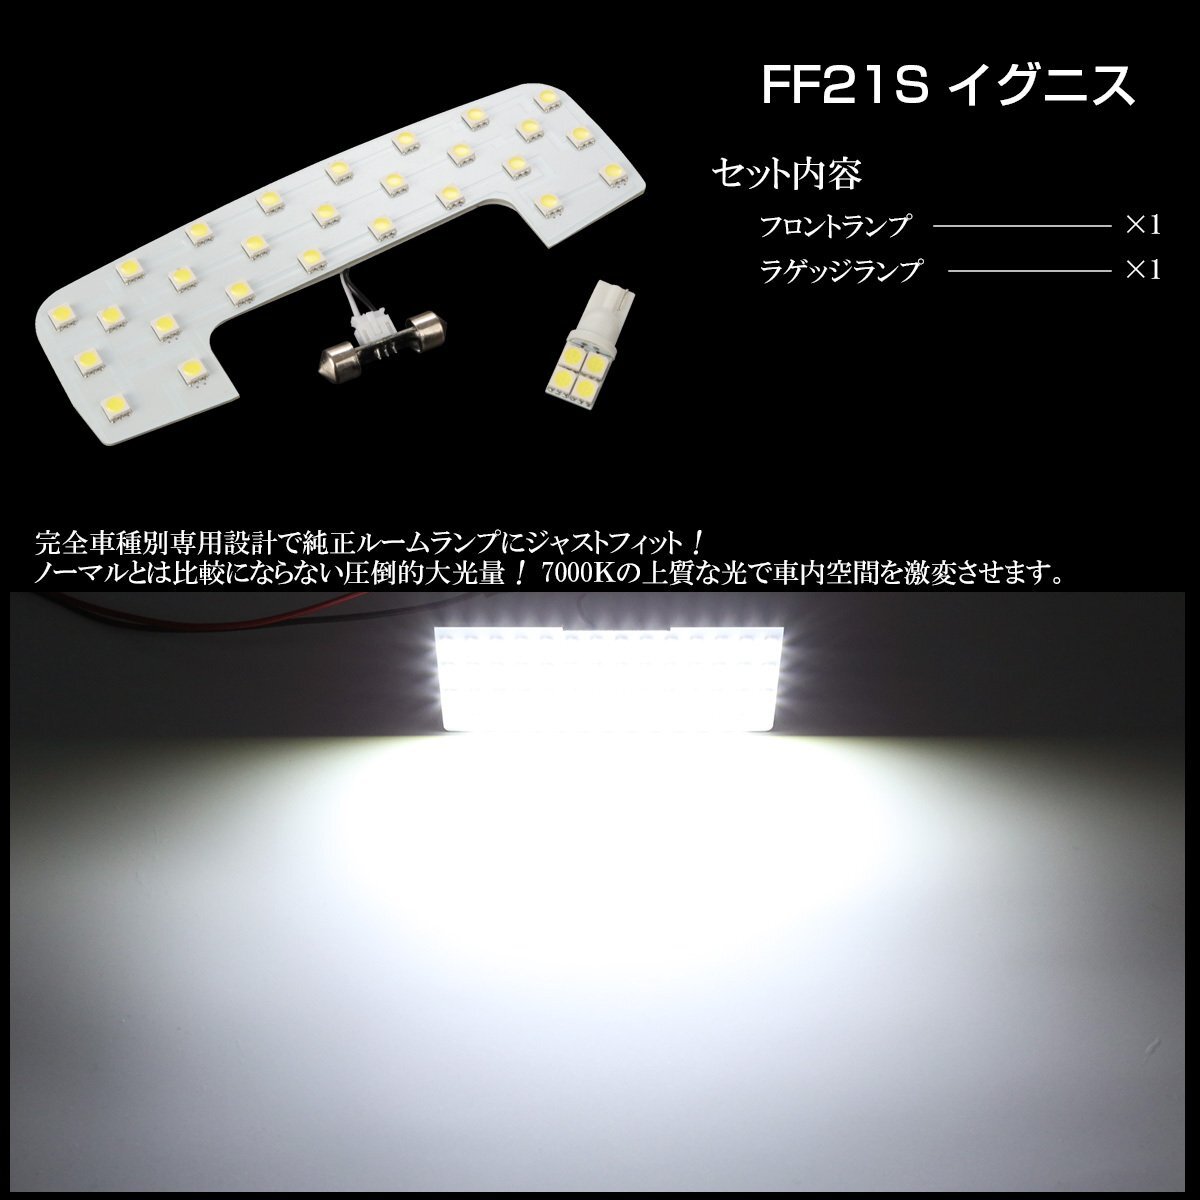 FF21S イグニス IGNIS 専用設計 LED ルームランプ 純白光 7000K ホワイト R-439I_画像3